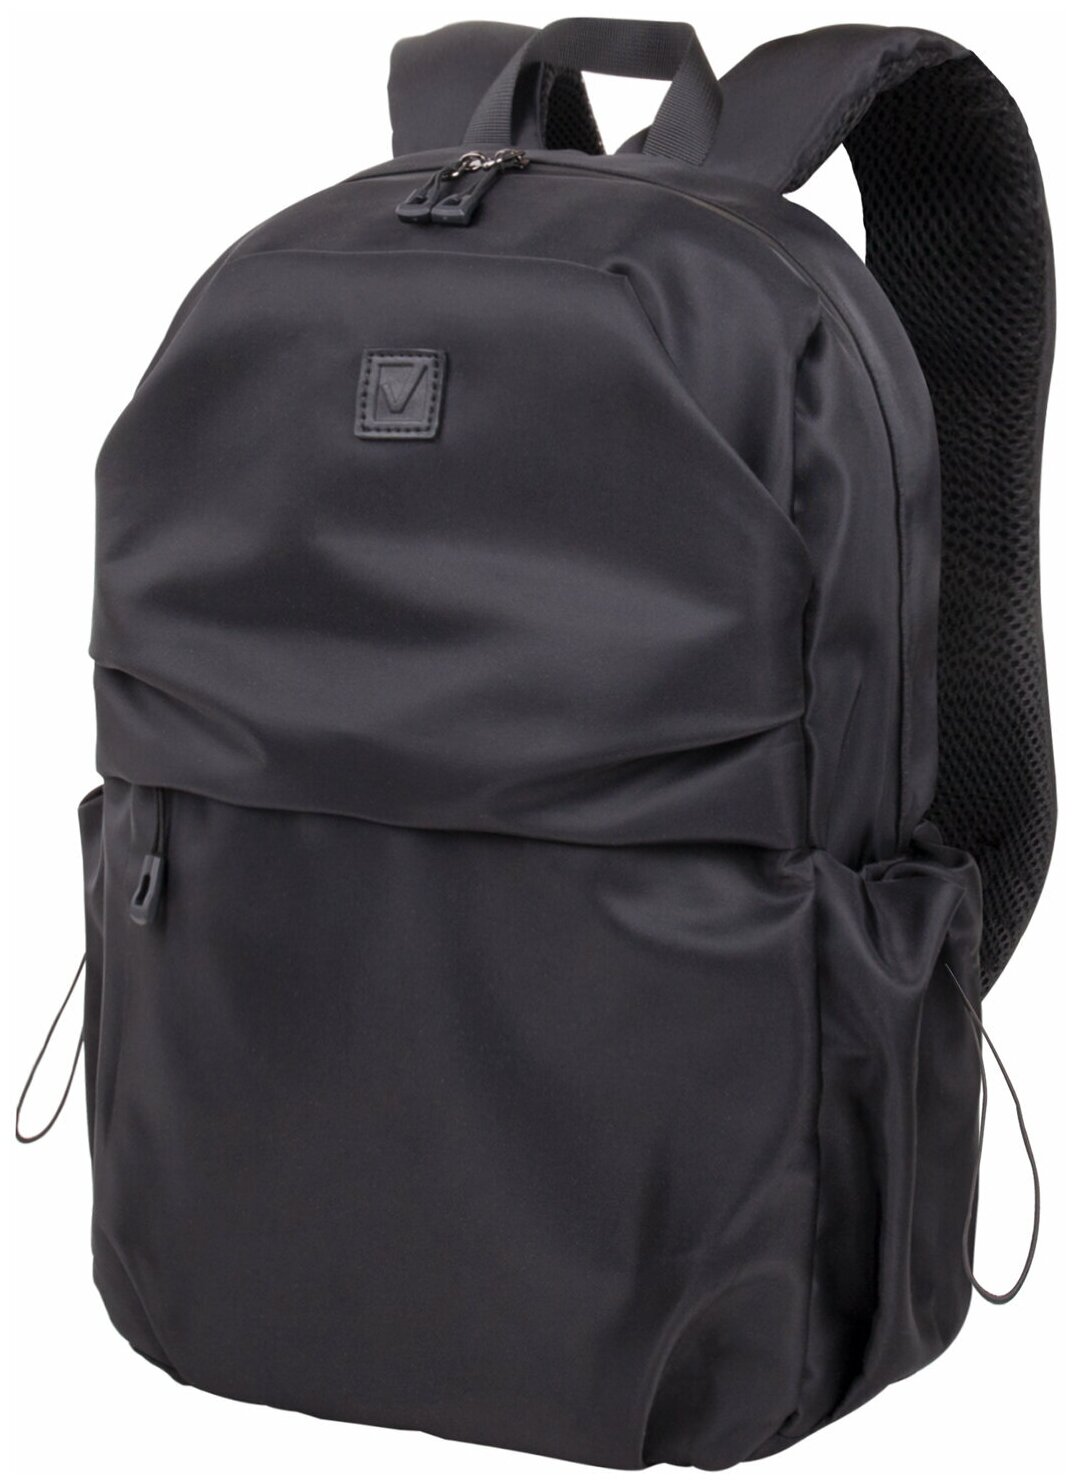 Рюкзак портфель школьный, подростковый для мальчика и девочки вместительный Brauberg Intense универсальный с отделением для ноутбука, 2 отделения